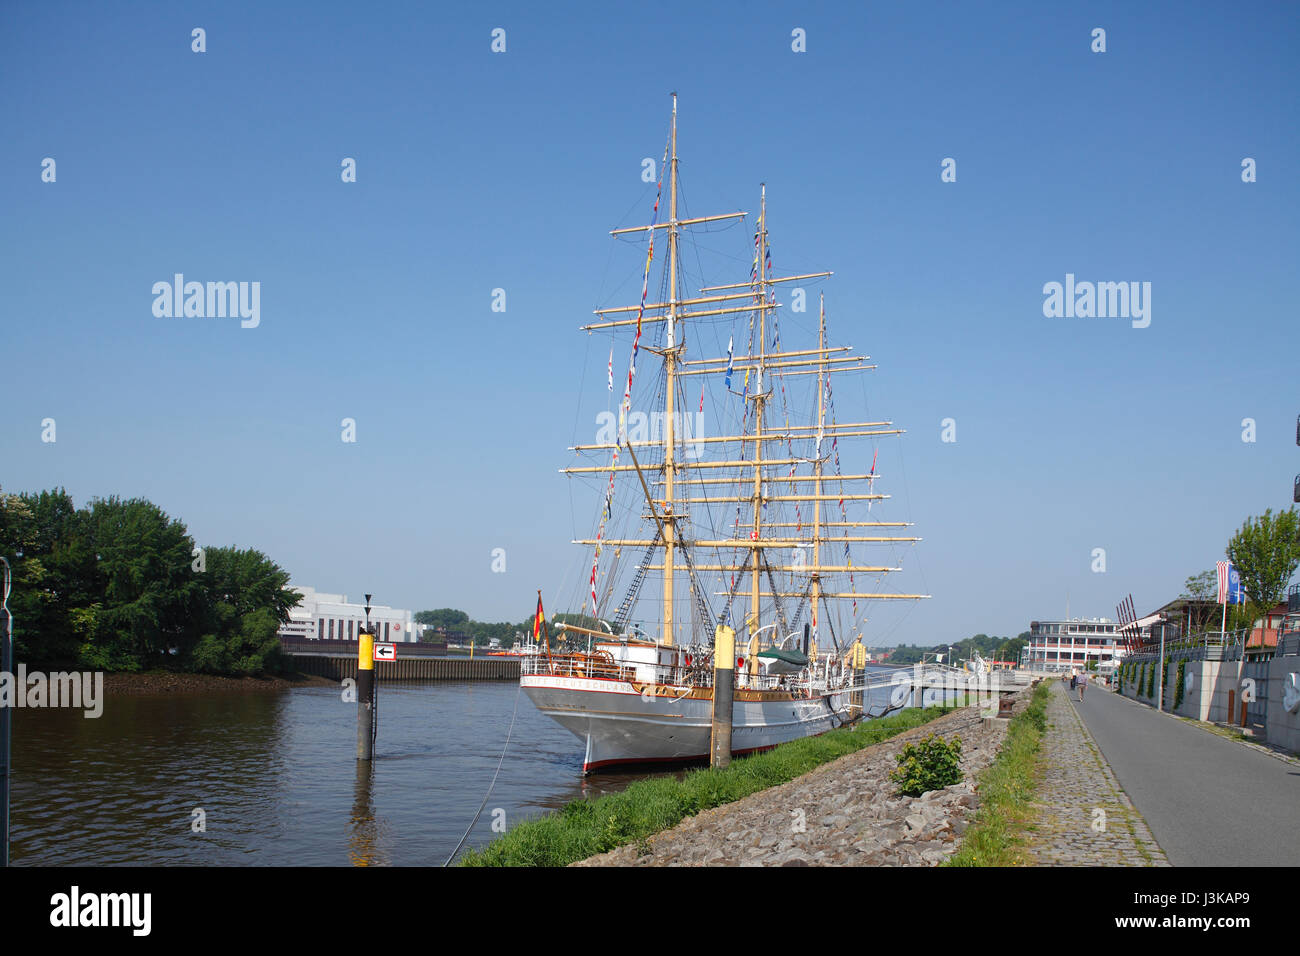 Segeln Schiff Deutschland, Vegesack, Bremen, Deutschland, Europa ich Segelschulschiff Deutschland bin Fluss Lesum, Bremen-Vegesack, Bremen, Deutschland, Euro Stockfoto